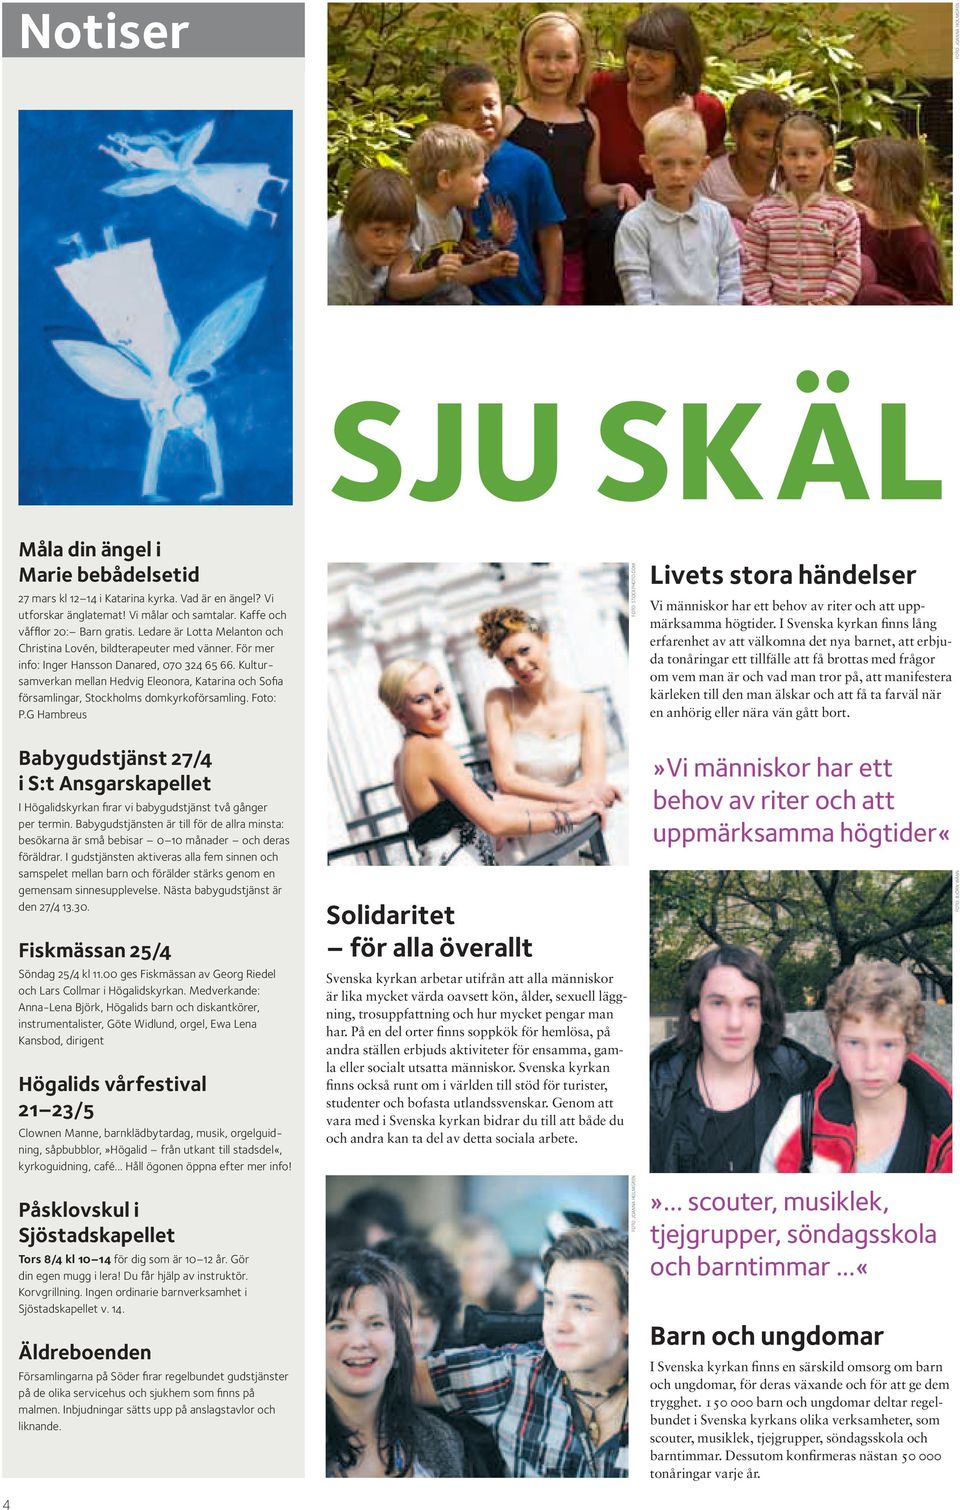 Kultursamverkan mellan Hedvig Eleonora, Katarina och Sofia församlingar, Stockholms domkyrkoförsamling. Foto: P.